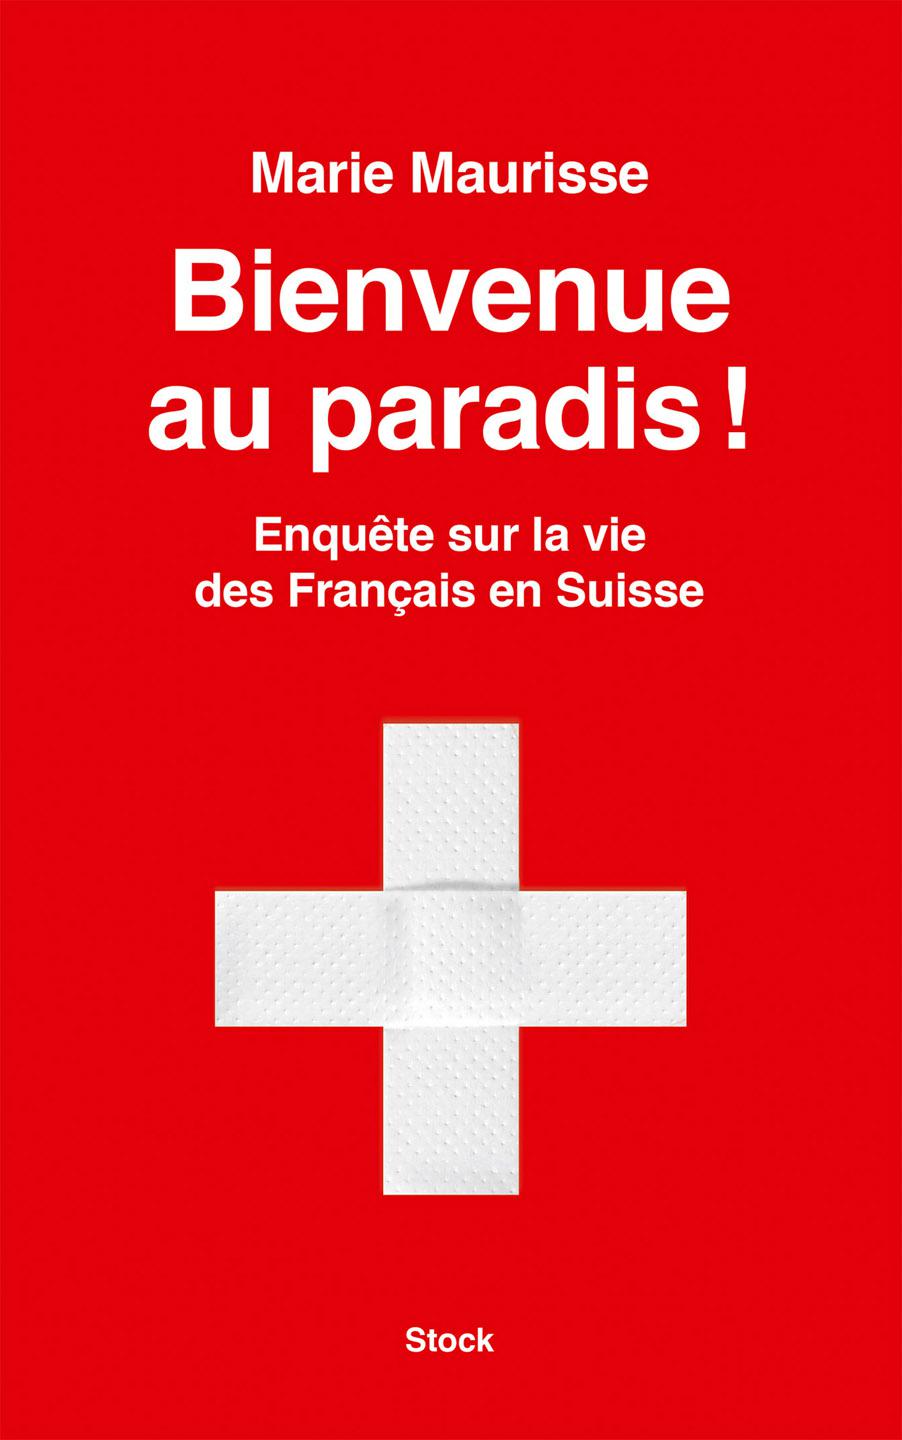 Bienvenue au paradis : Enquête sur la vie des Français en Suisse. Marie Maurisse